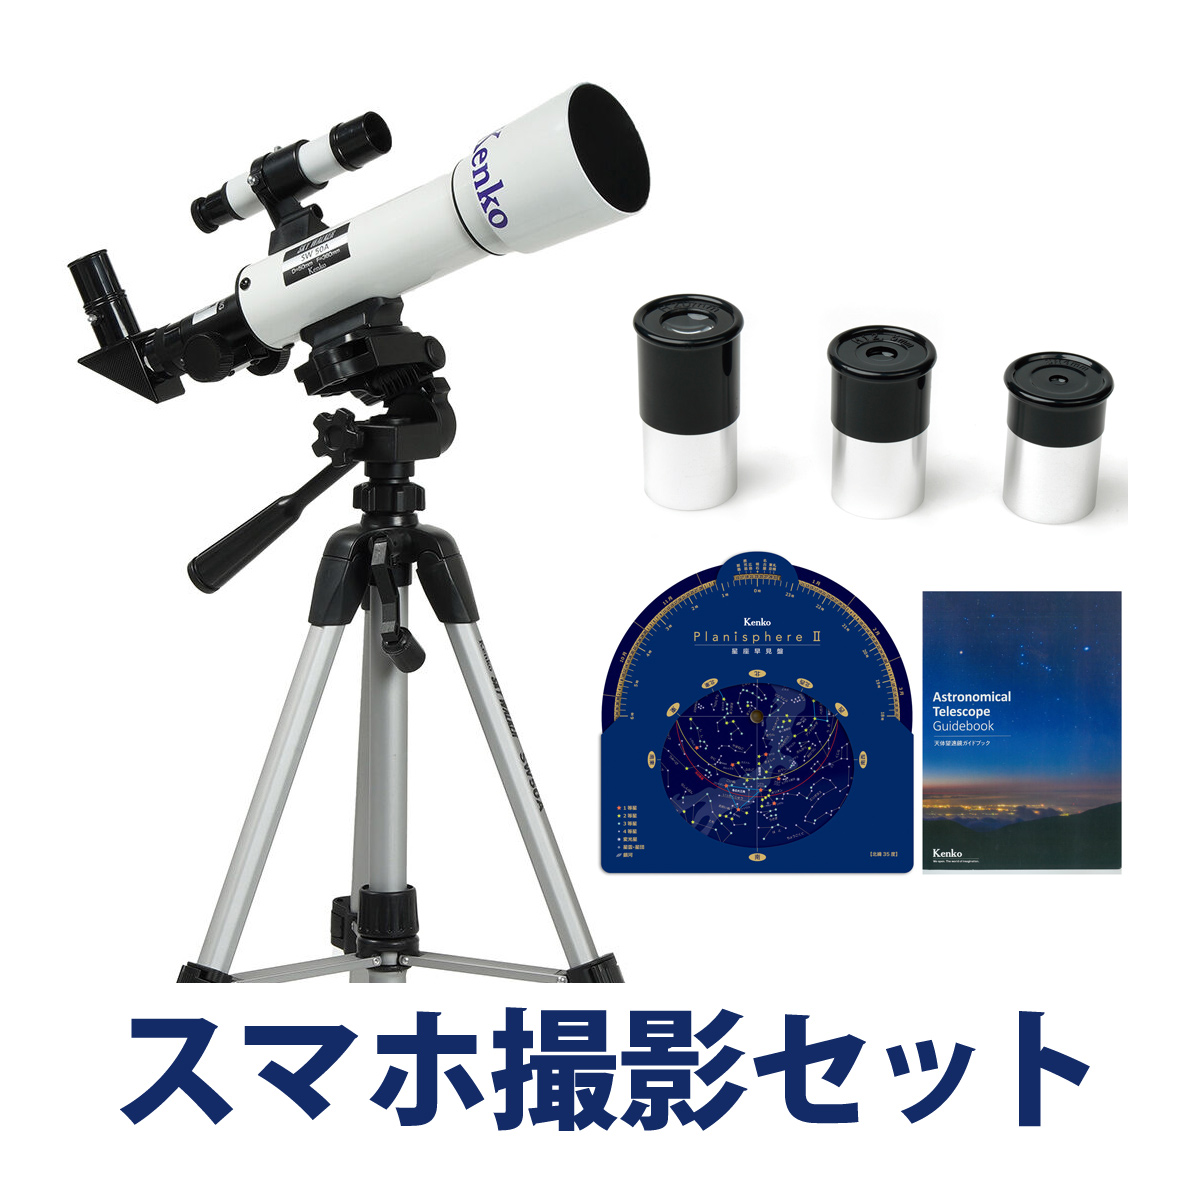 7865円 【おすすめ】 天体望遠鏡 スマホ対応 初心者用 望遠鏡 天体 子供 小学生 レグルス50 天体ガイドブック付き 日本製 口径50mm カメラアダプター 屈折式 おす